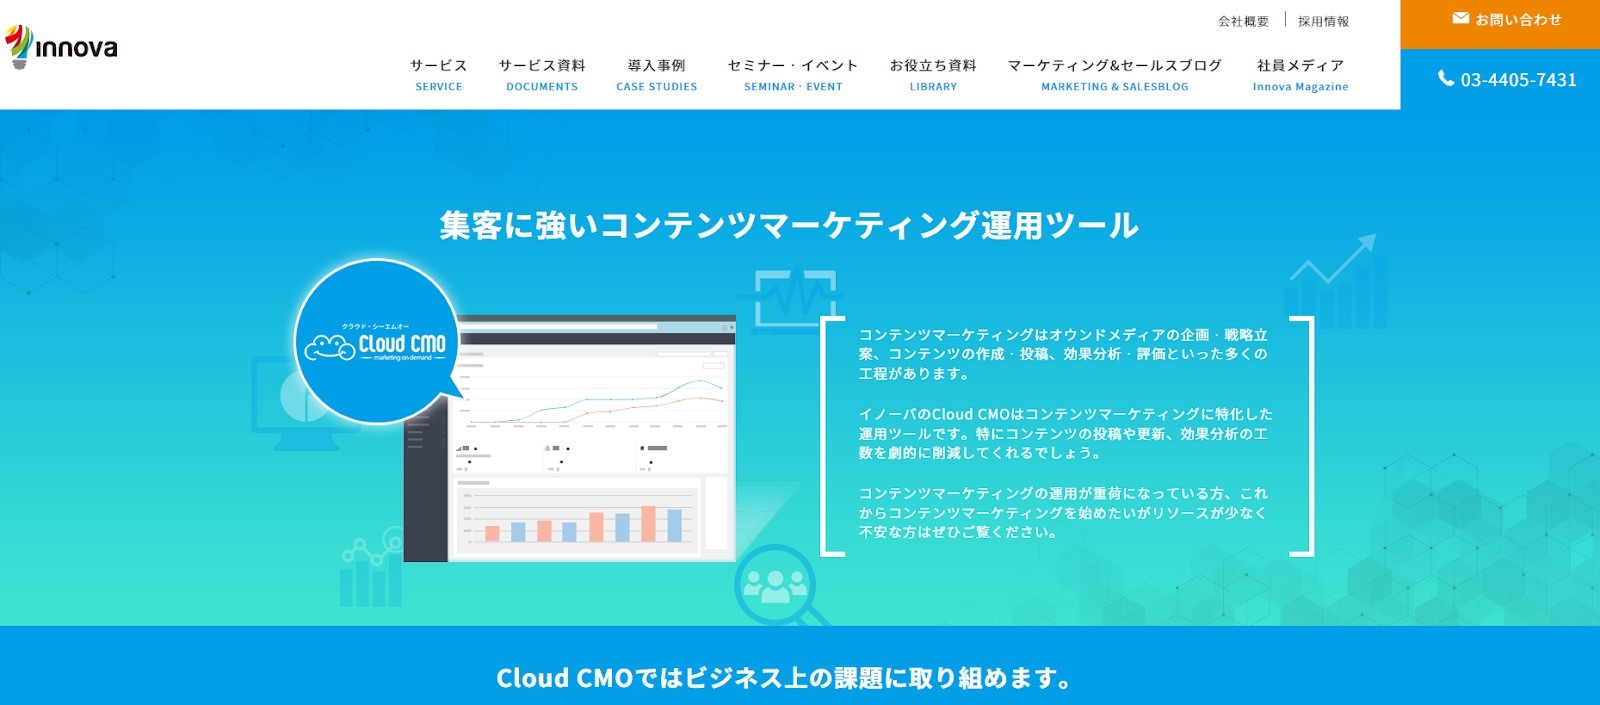 Cloud CMO